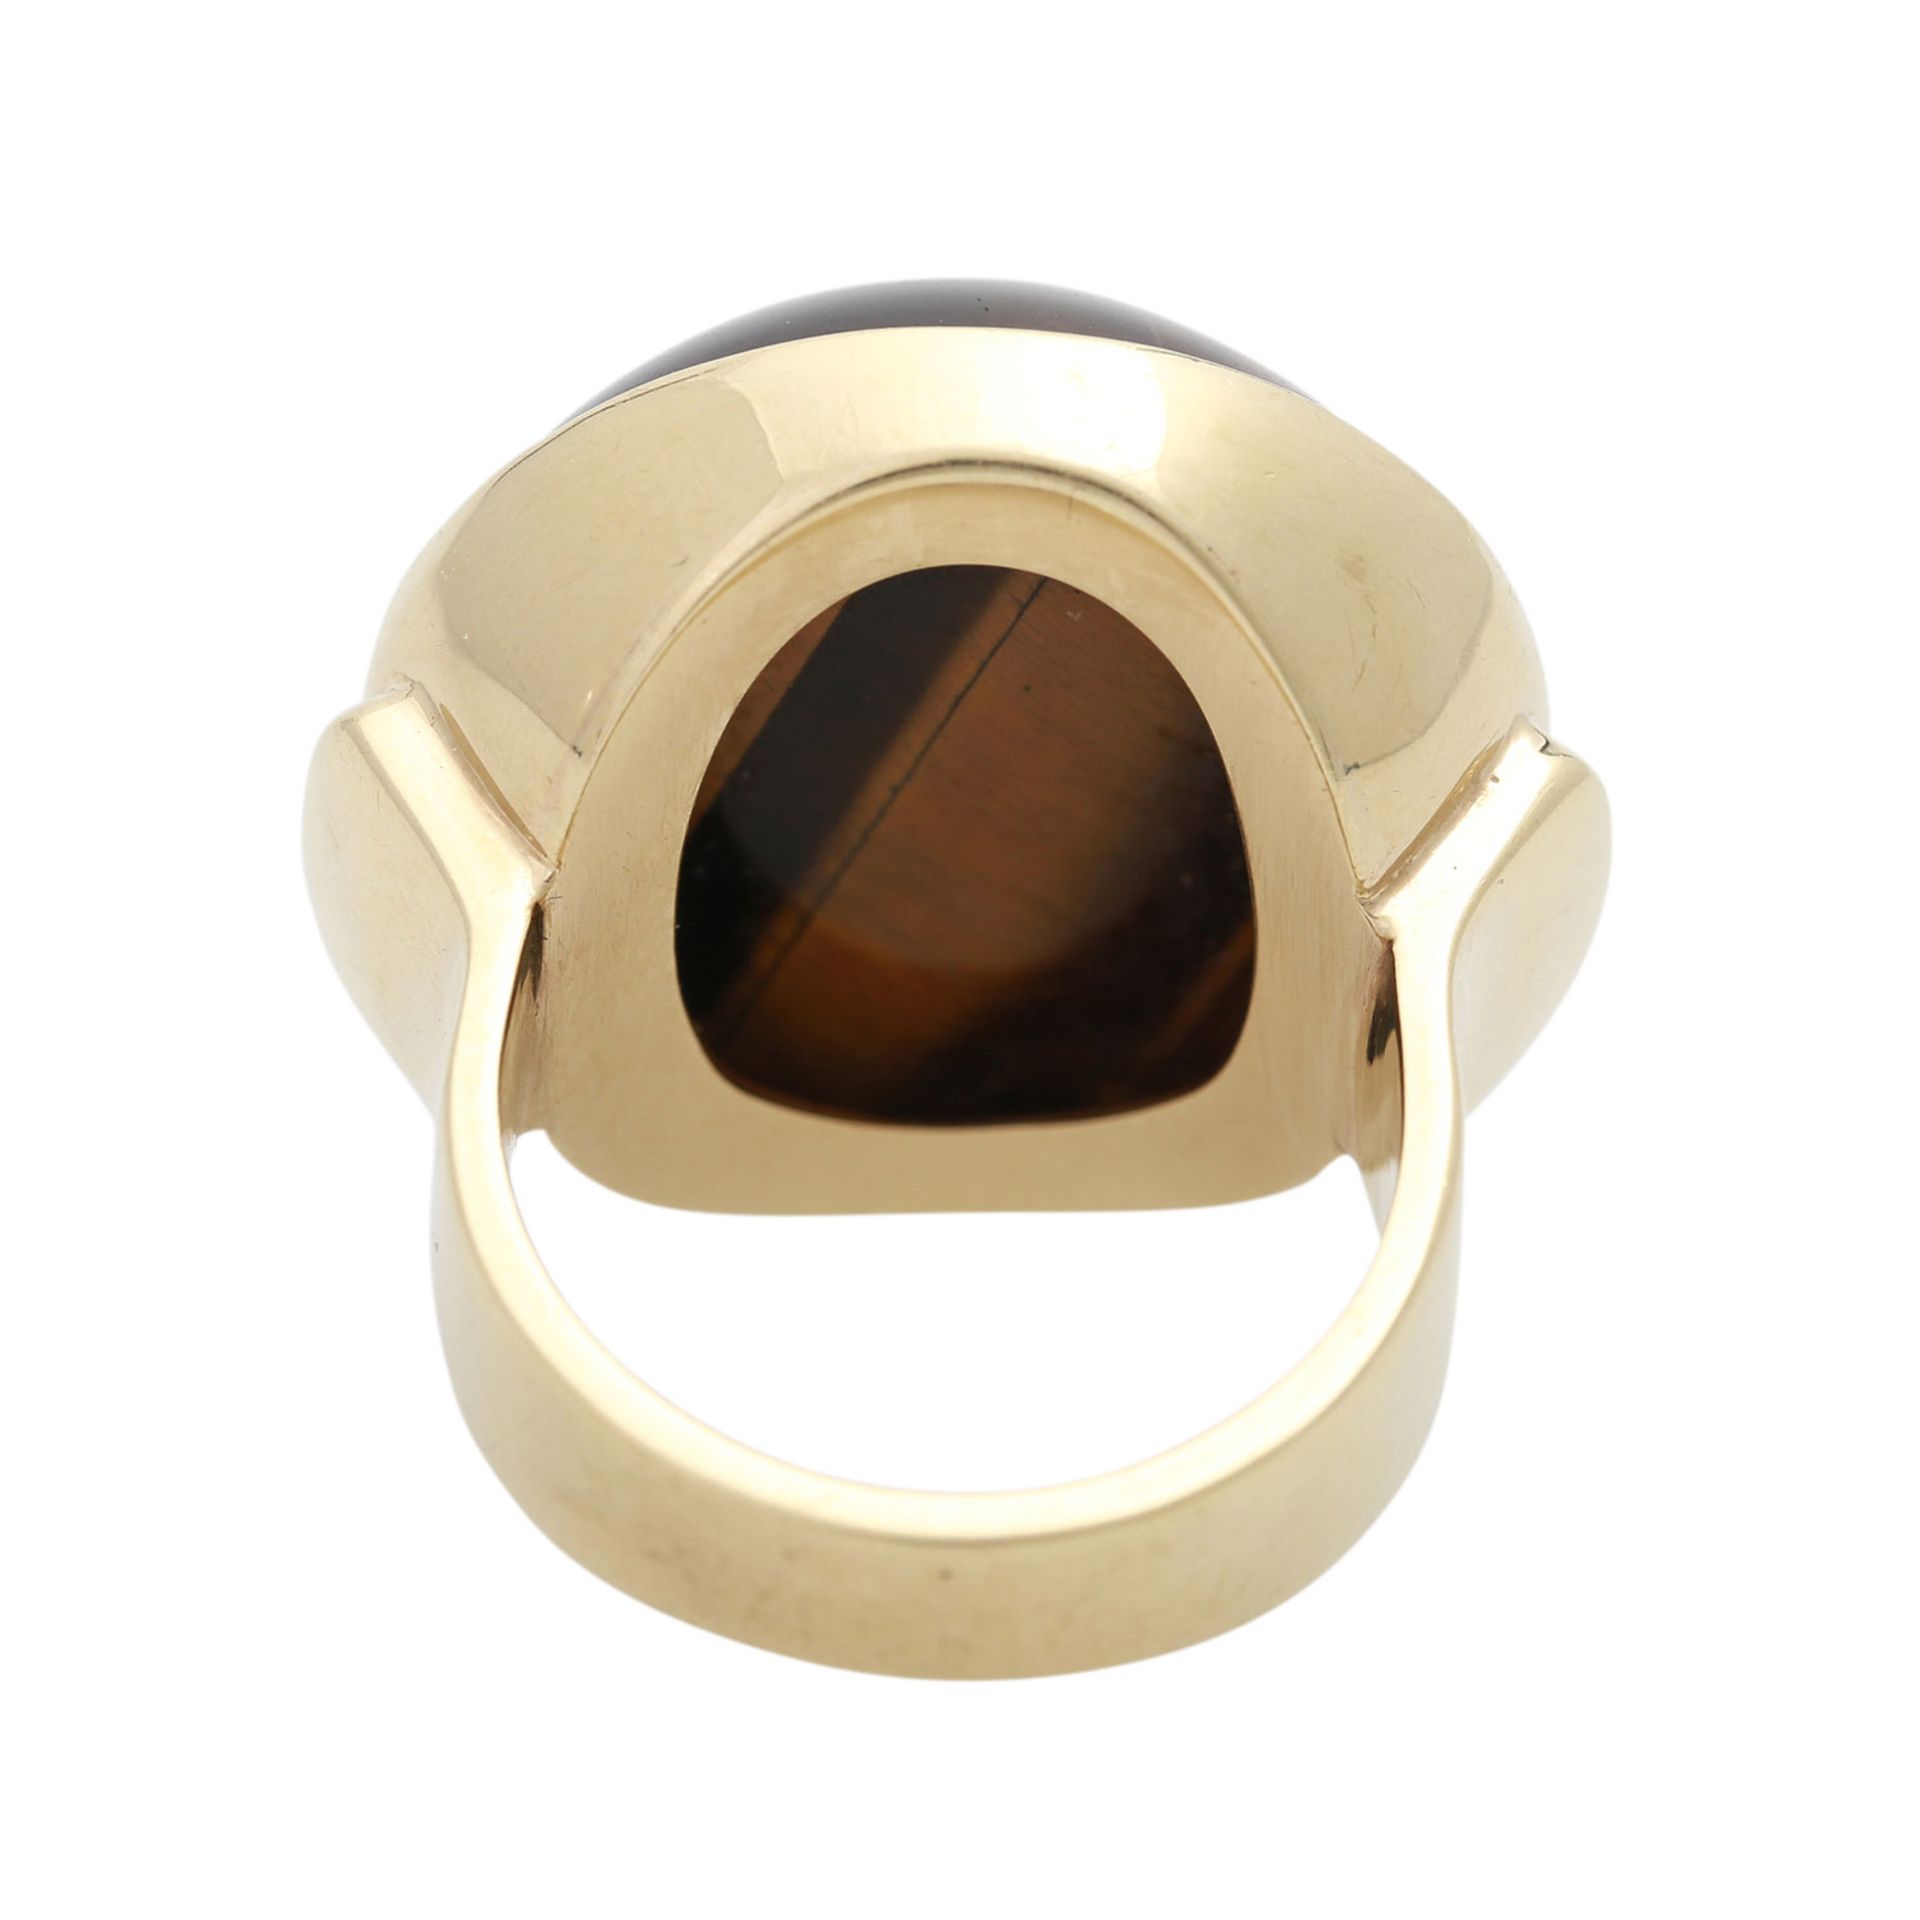 Ring mit großem Tigerauge-Cabochon,D: ca. 22 mm, GG 14K, 17,9 gr, RW 54, HANDARBEIT, - Bild 4 aus 4